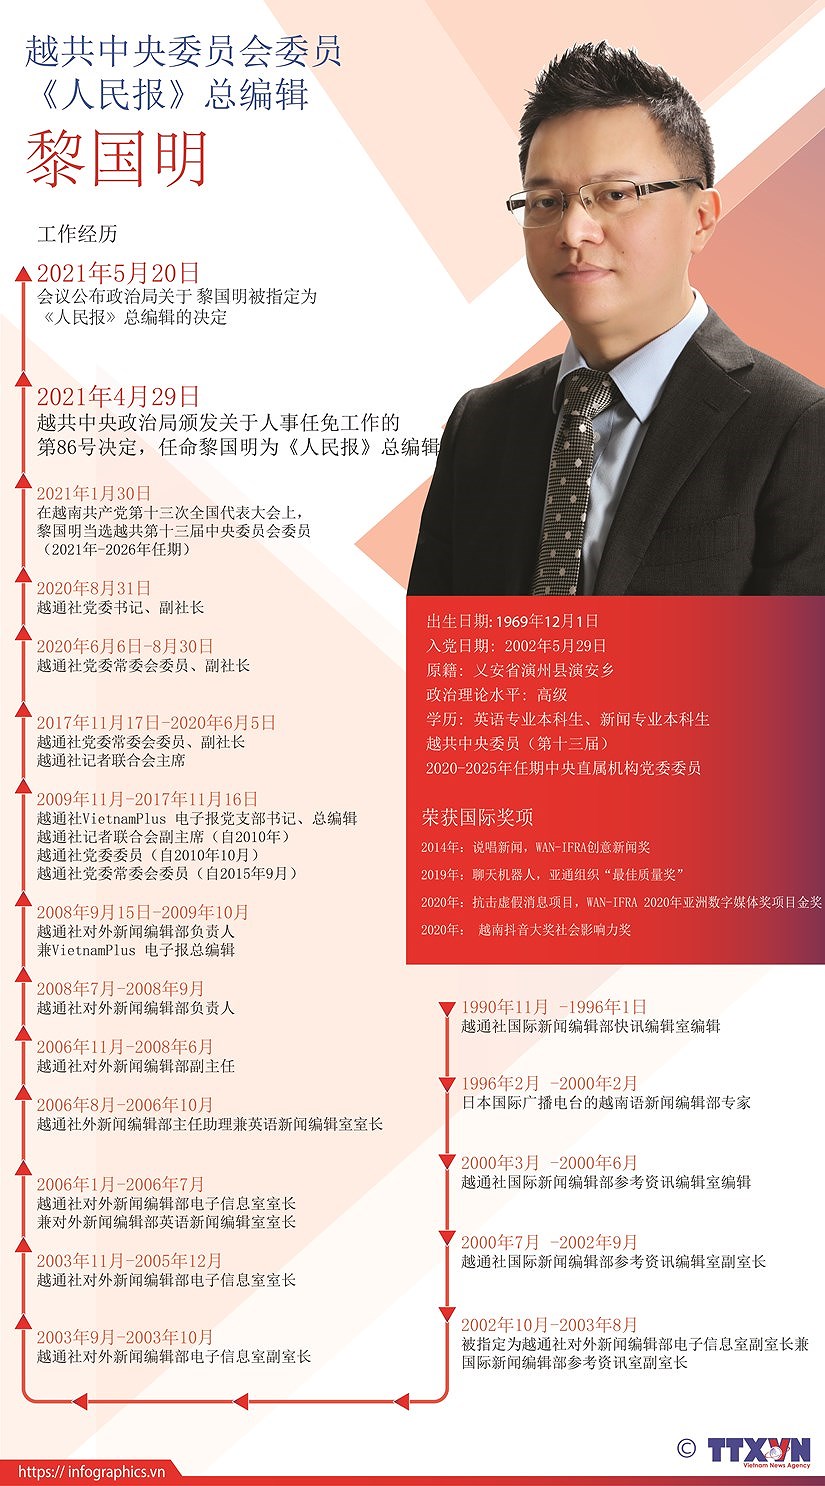 越通社副社长黎国明正式担任《人民报》总编辑 hinh anh 2